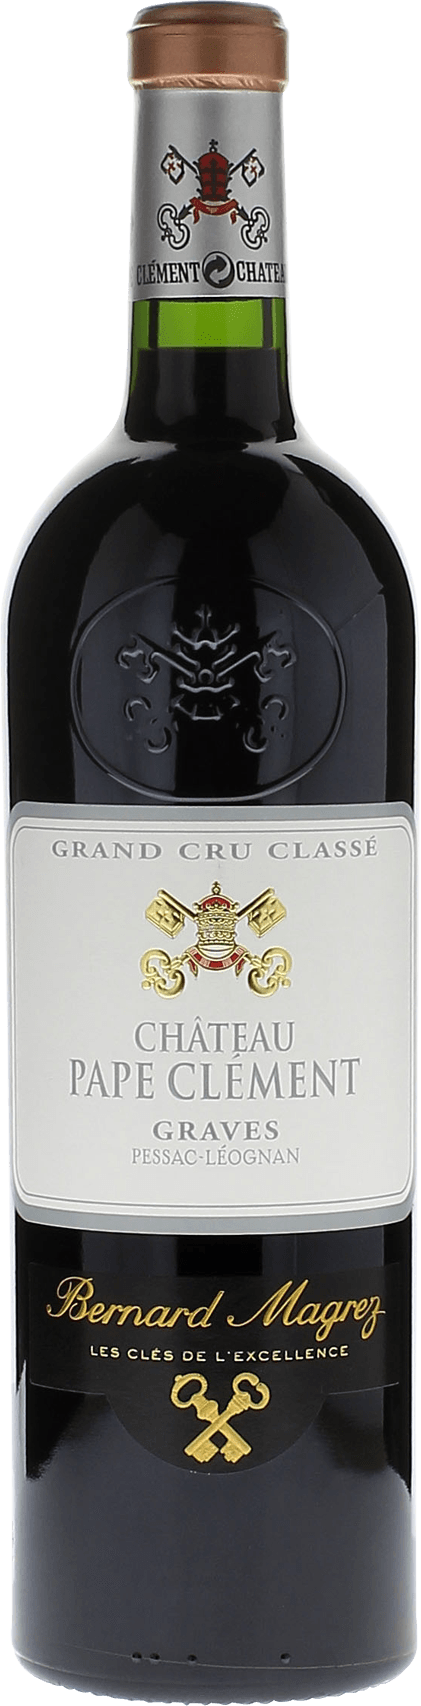 Pape clement rouge 1991 Grand Cru Class Graves, Bordeaux rouge